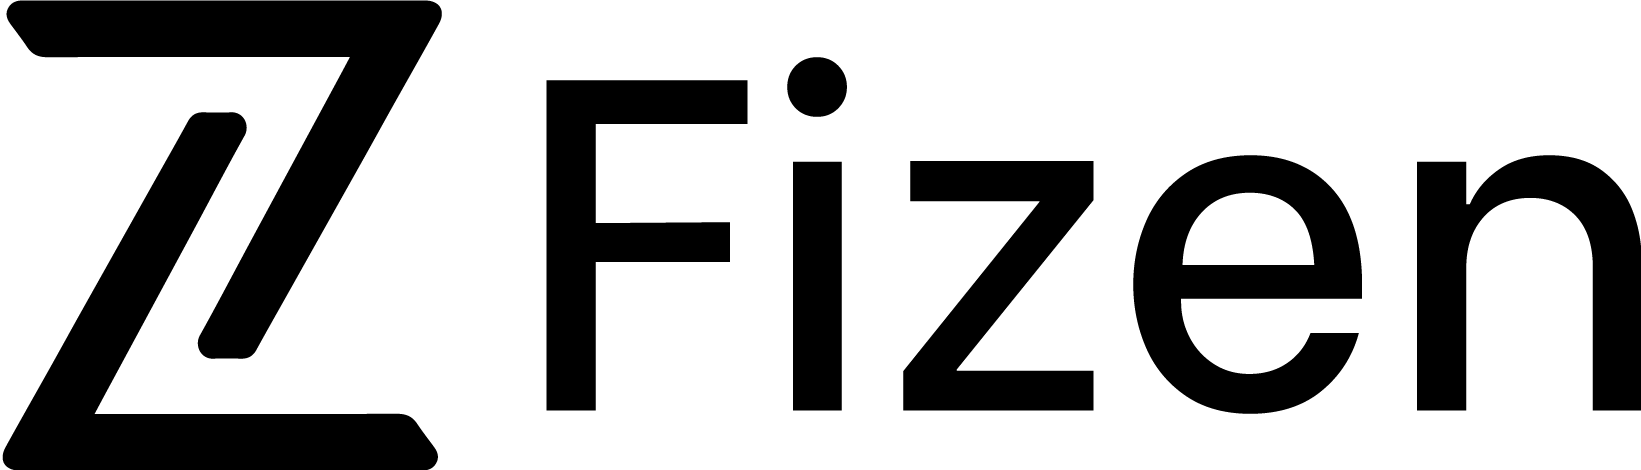 Fizen Logo.png